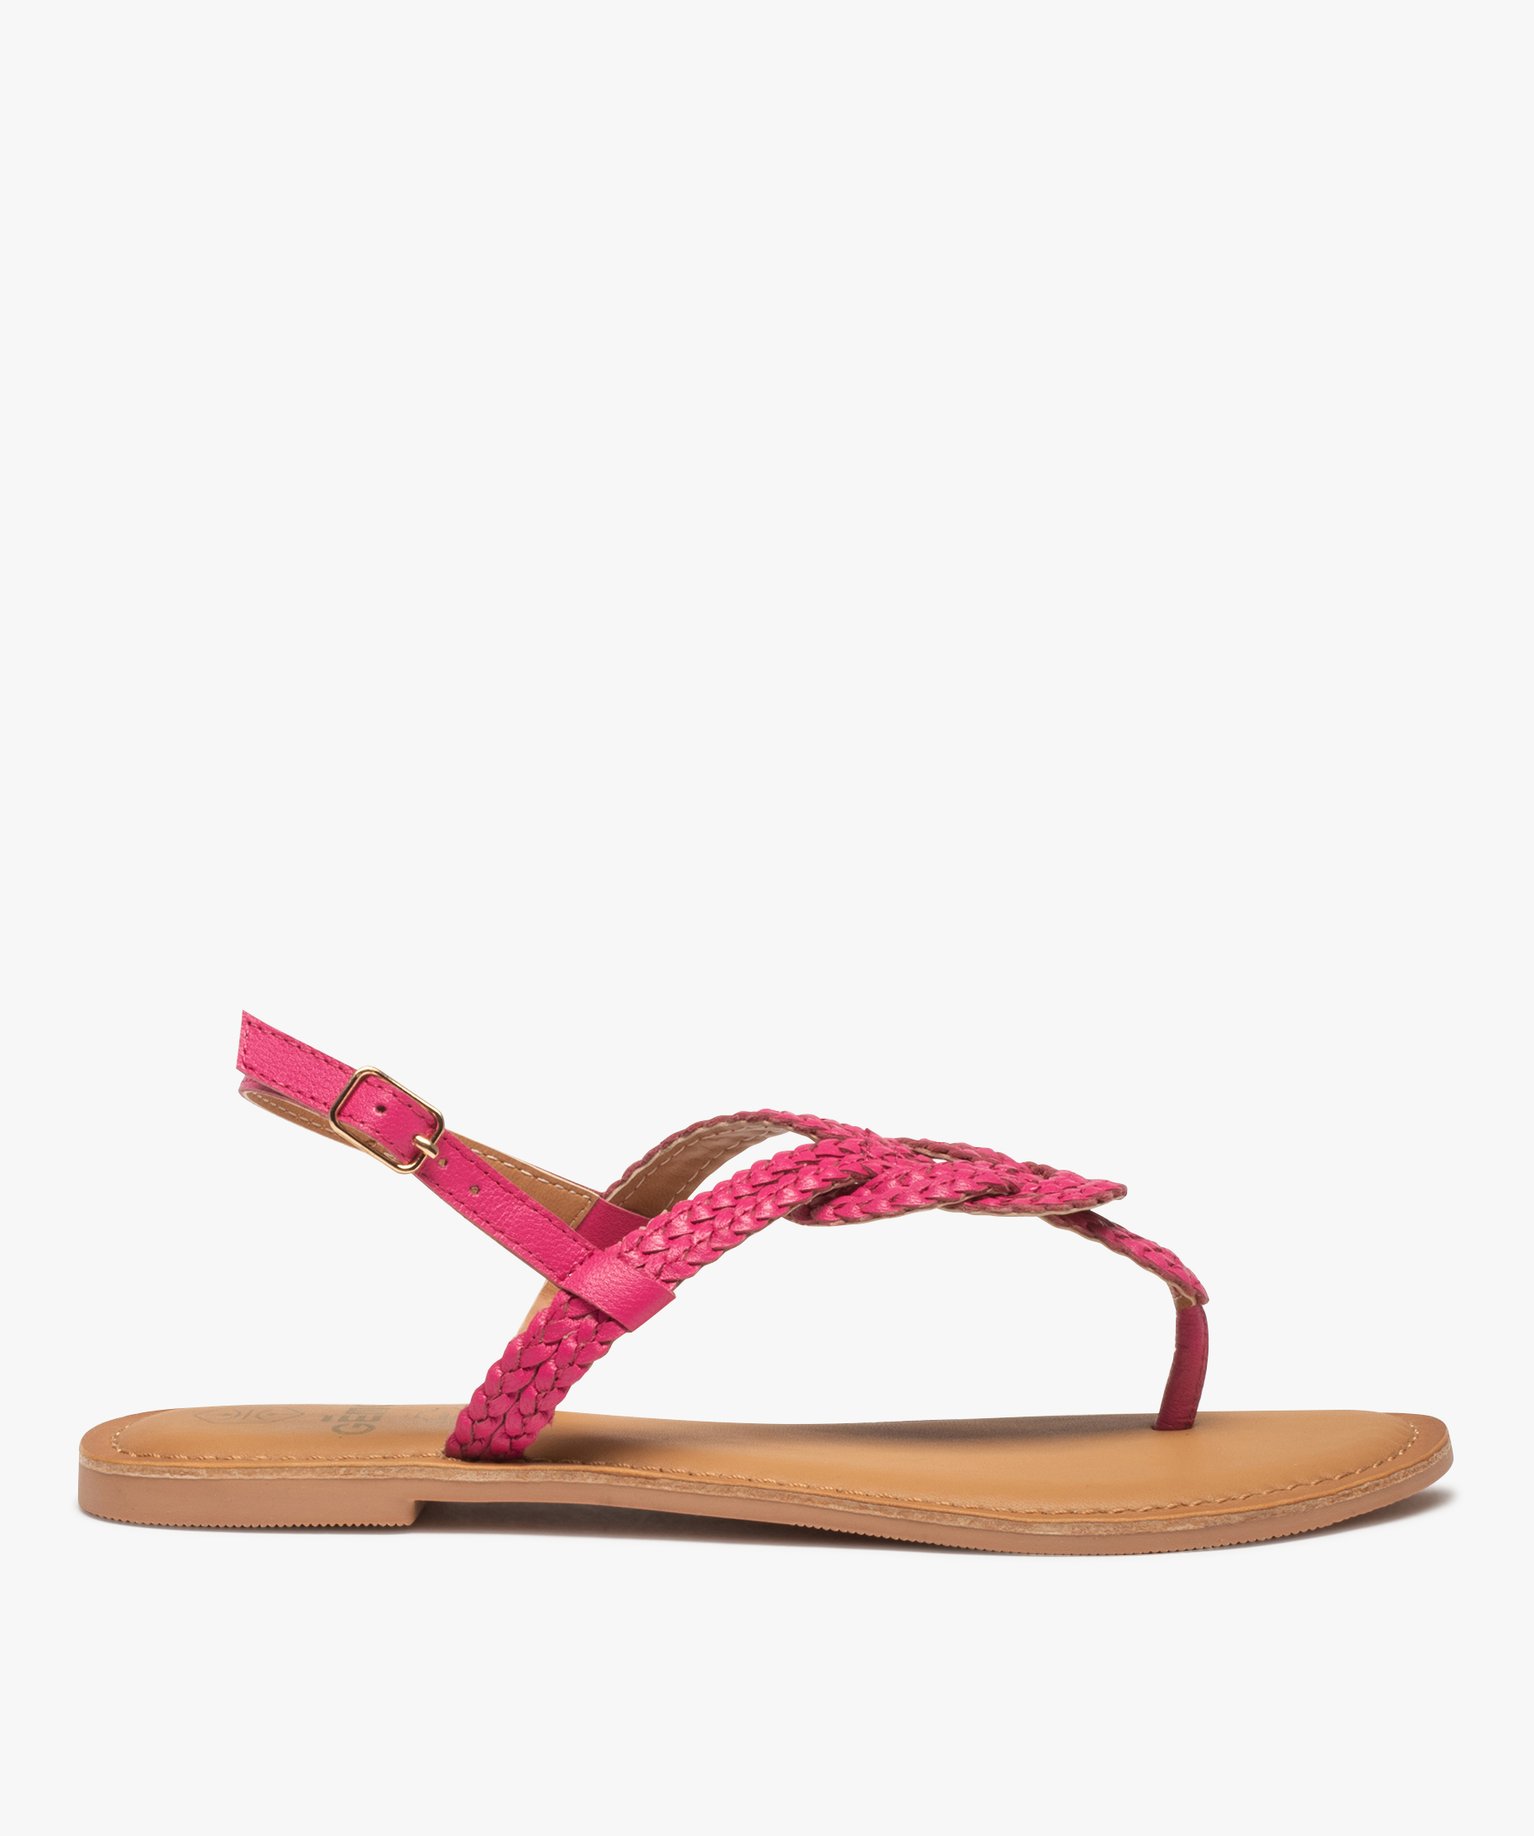 sandales femme a talon plat et brides entre-doigts tressees en cuir rose sandales plates et nu-pieds